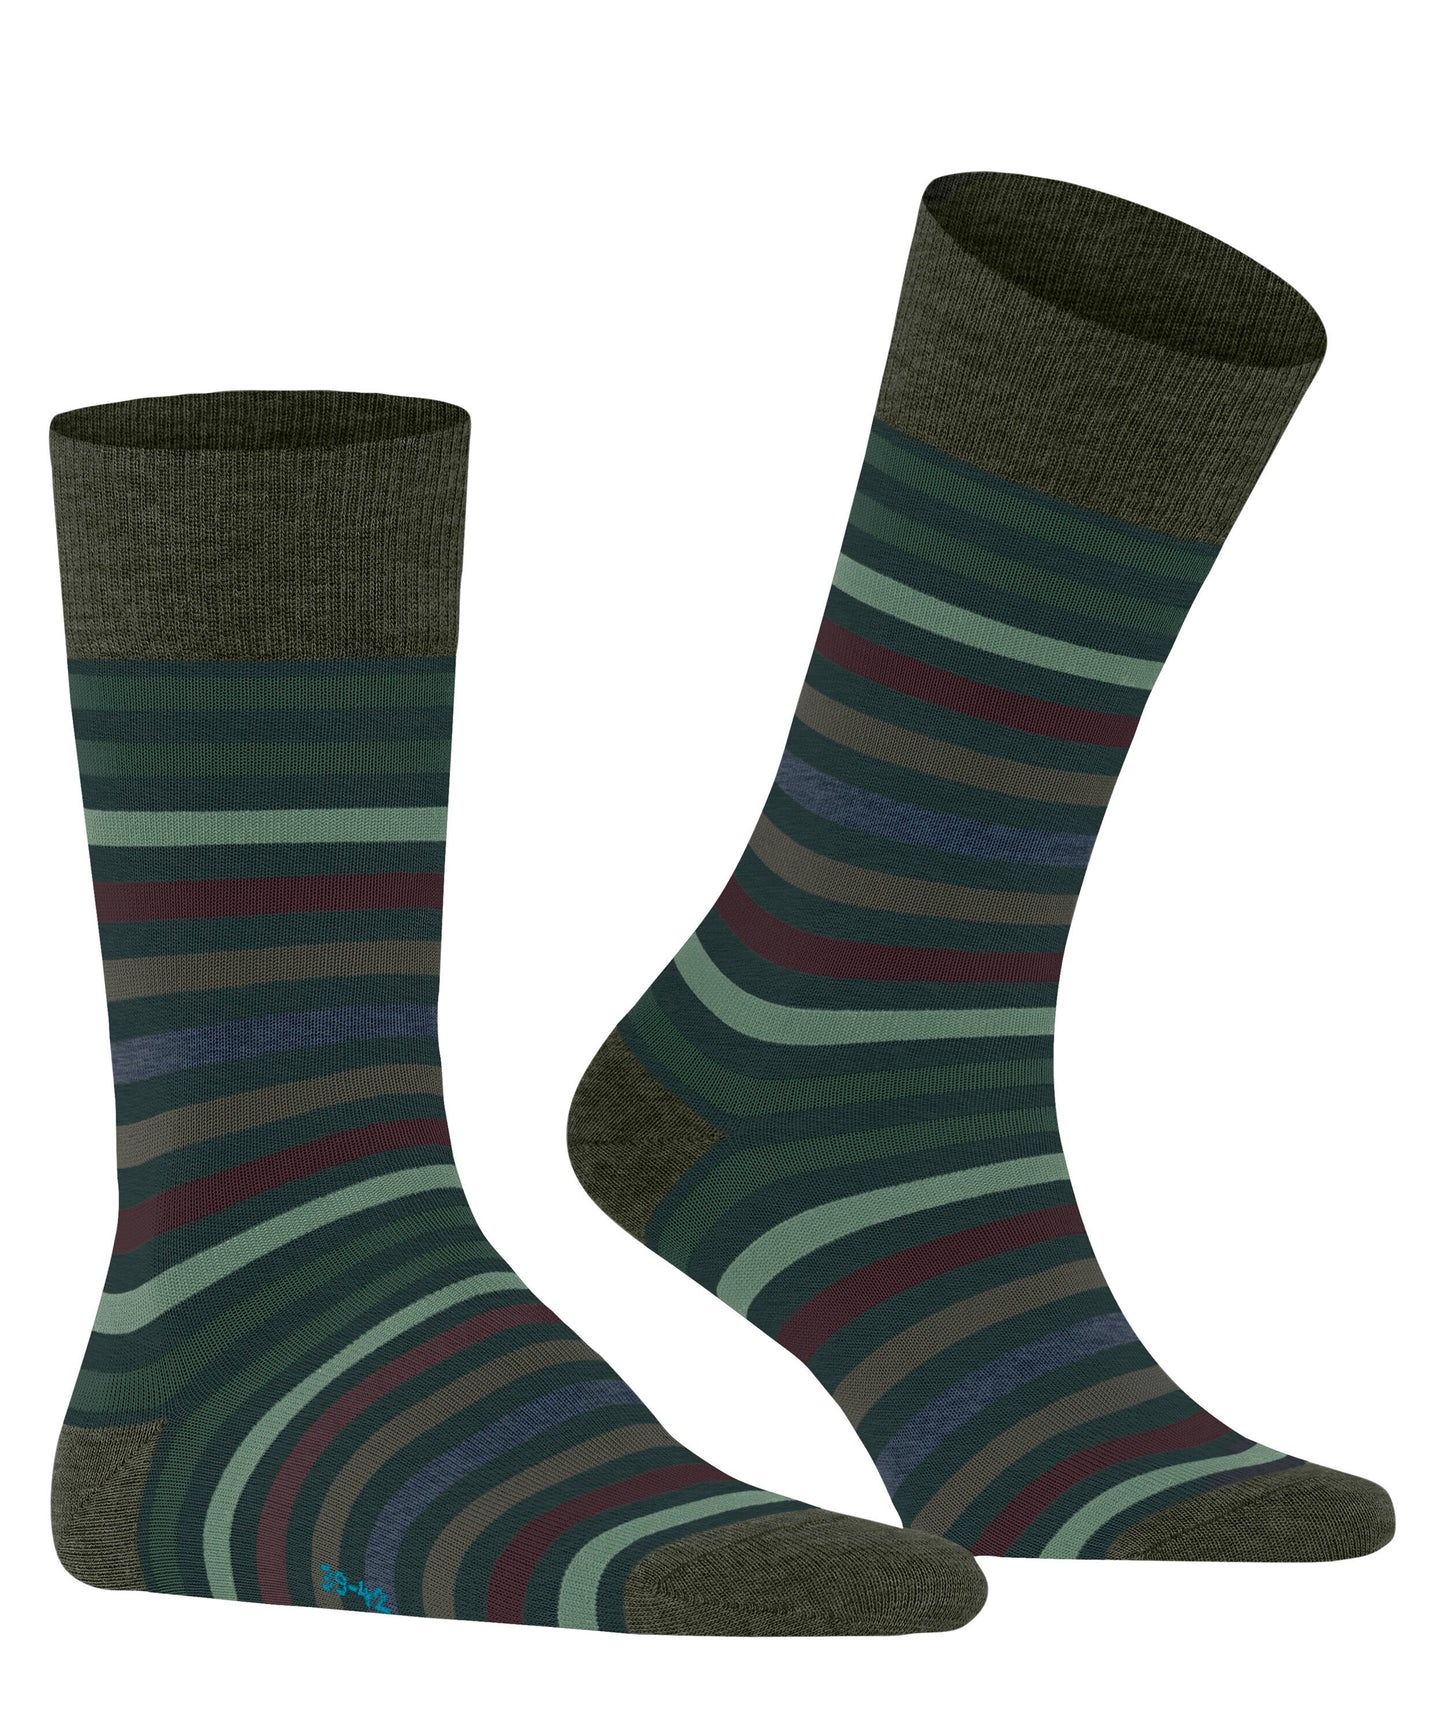 FALKE Tinted Stripe Herren Socken (Wald)